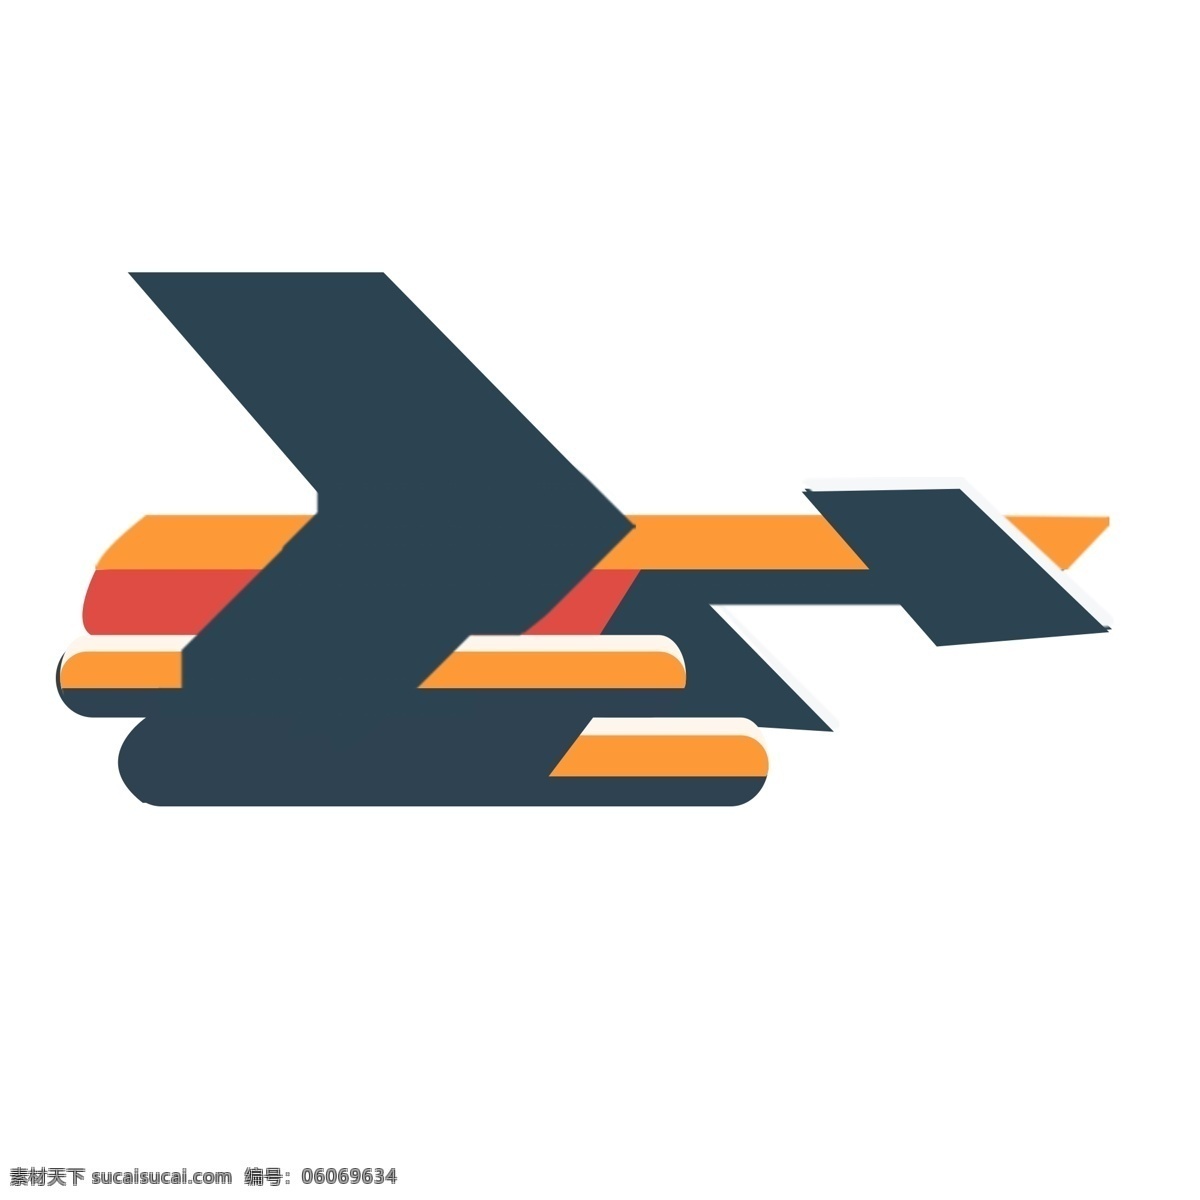 扁平化 创意 飞机 元素 翅膀 科技 飞舞 交通 出行 起飞 机翼 光泽 卡通 运输 度假